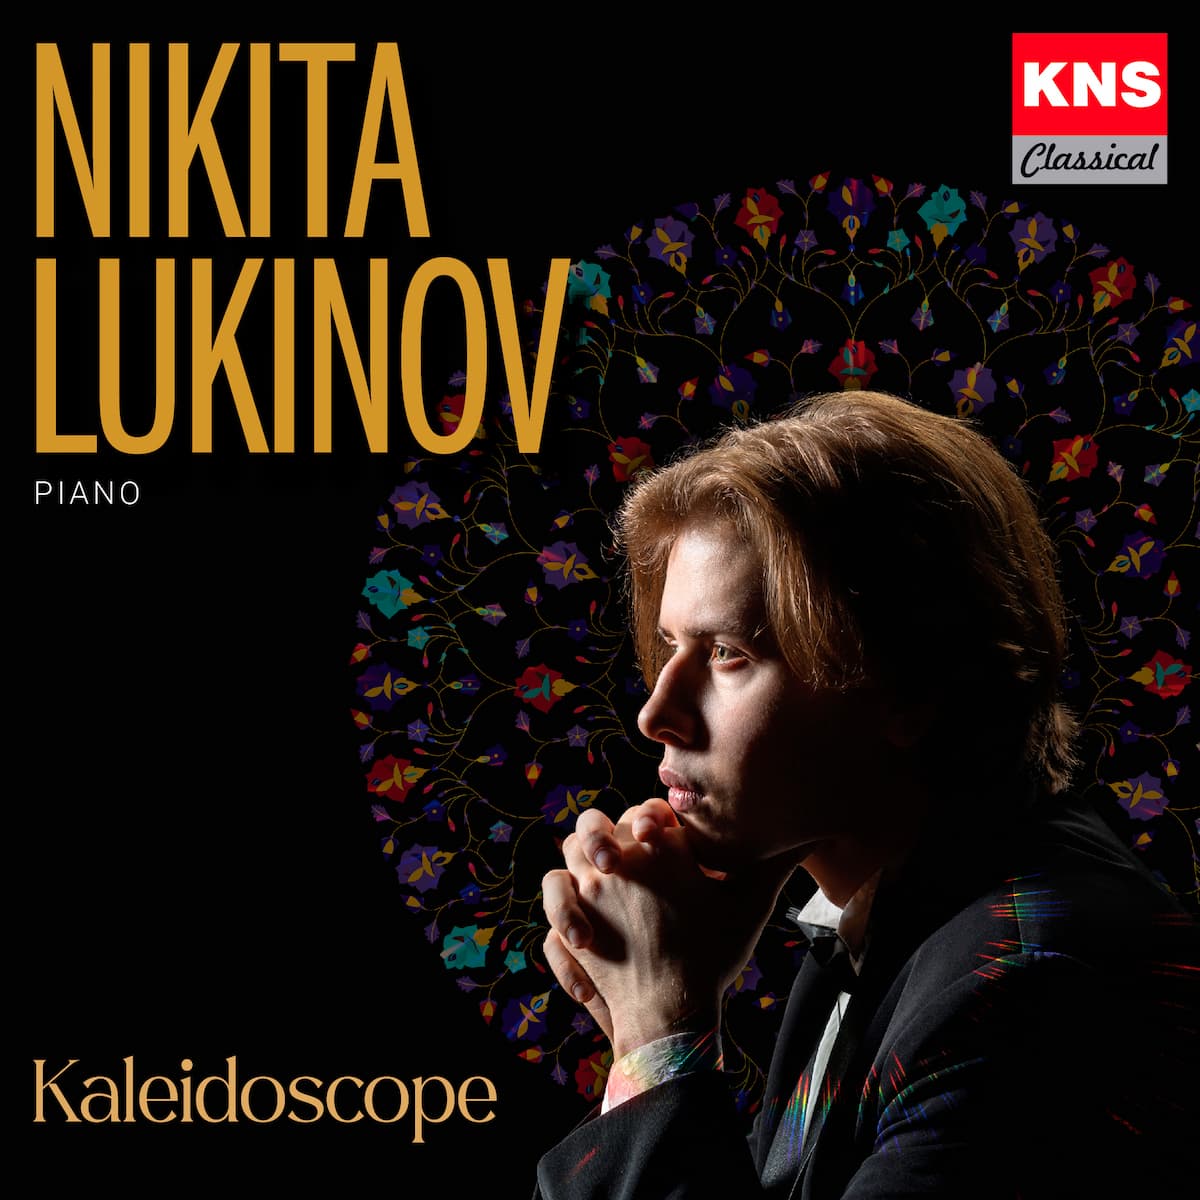 Nikita Lukinov's recording "Kaleidoscope"